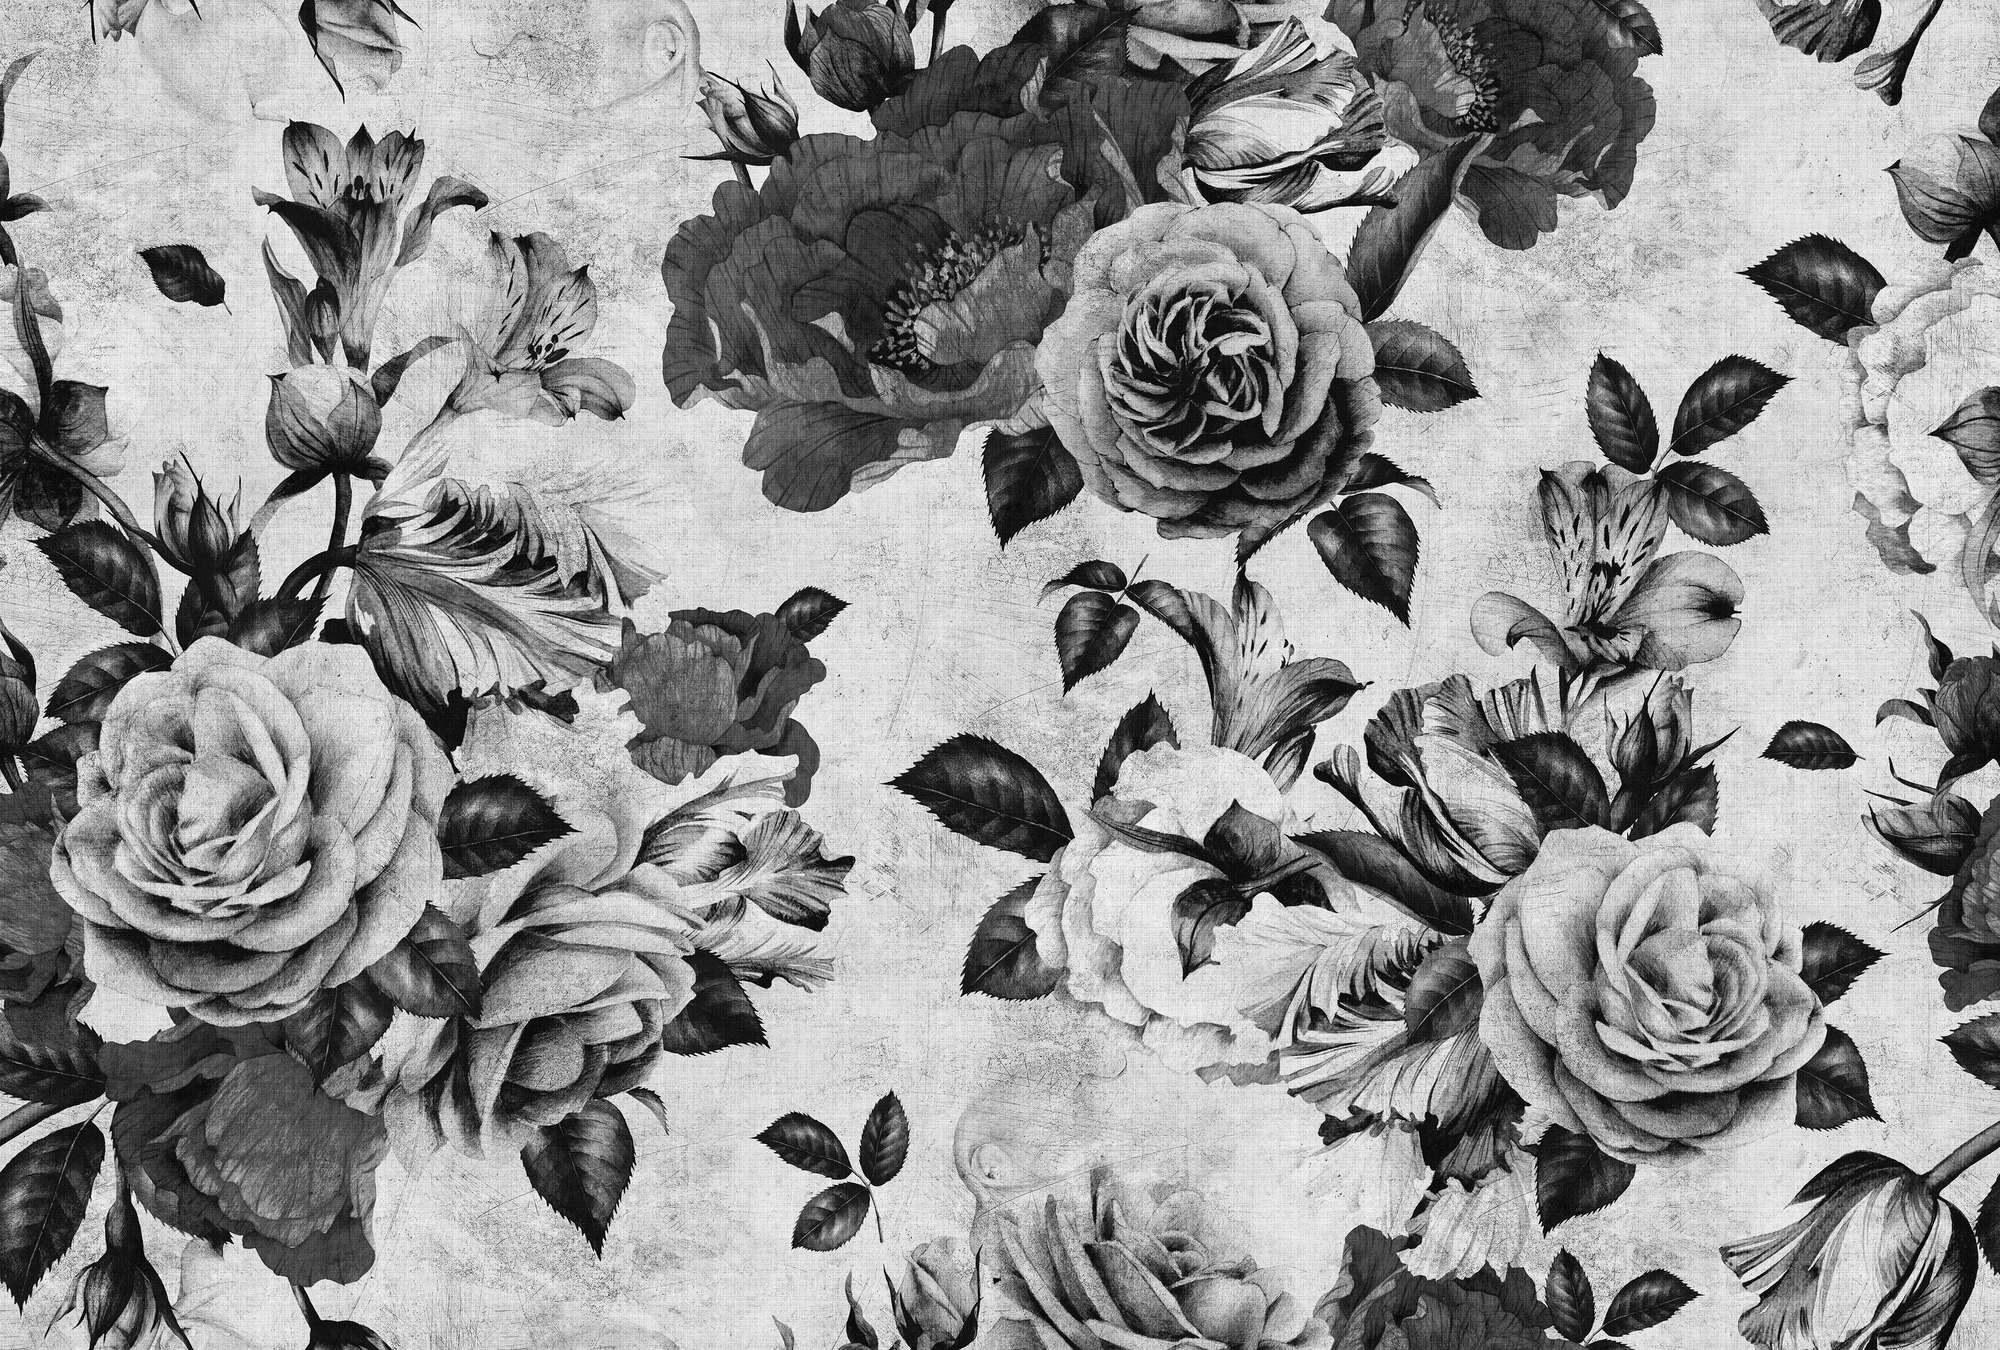             Spanish rose 1 - Papel pintado Rosa con flores blancas y negras en estructura de lino natural - gris, negro | estructura no tejida
        